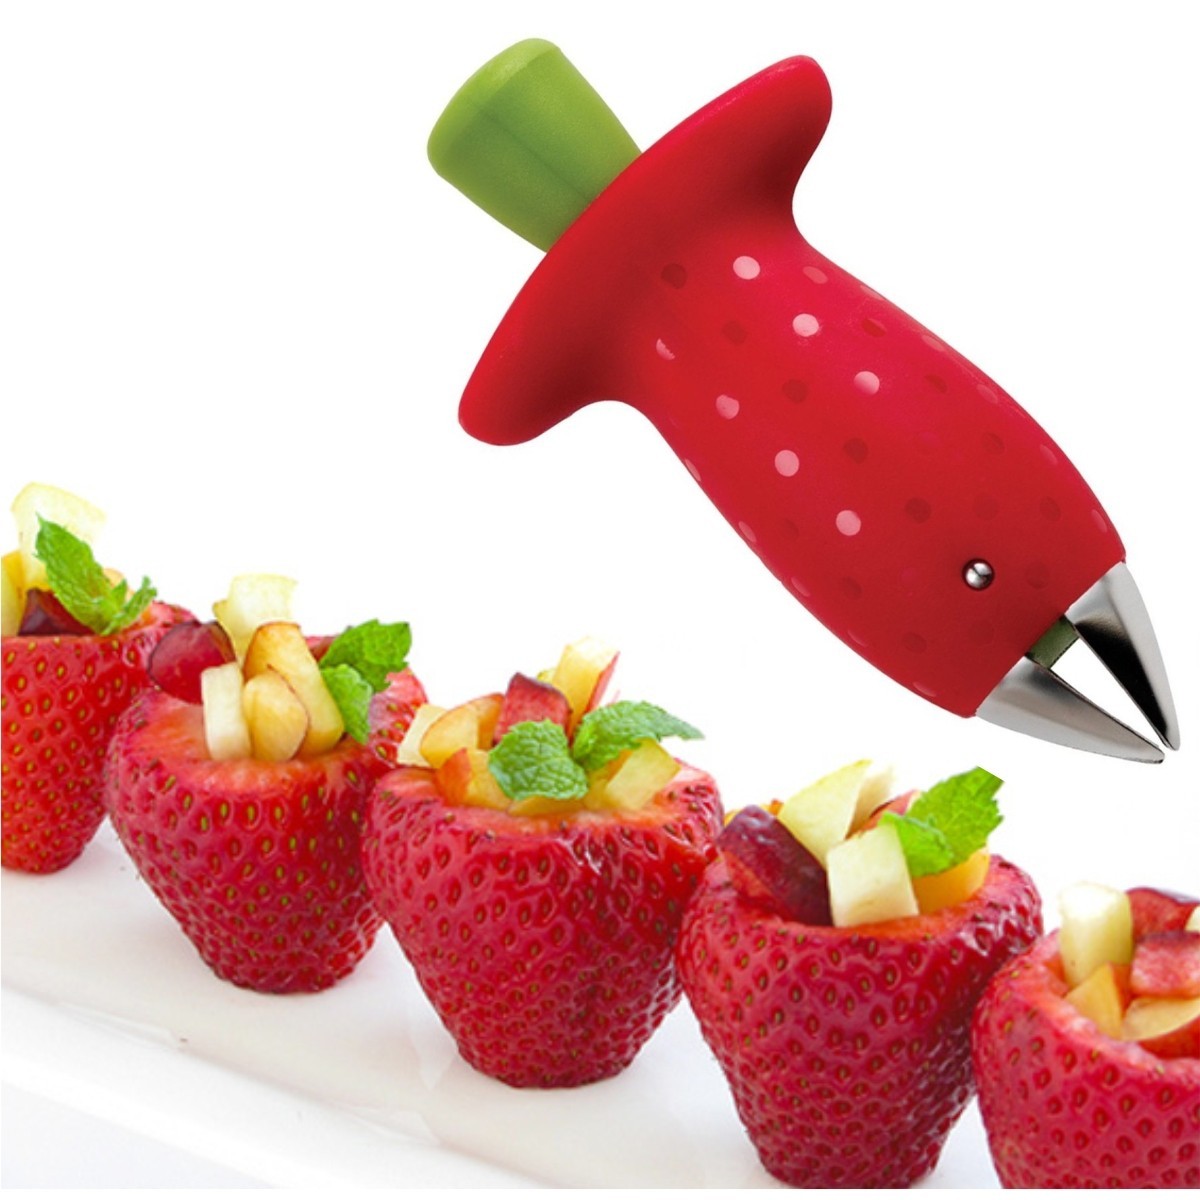 Detalles acerca de   Strawberry Berry de Tallo Gem Removedor De Fruta Corer Slicer desgranadora de hojas de Split mostrar título original